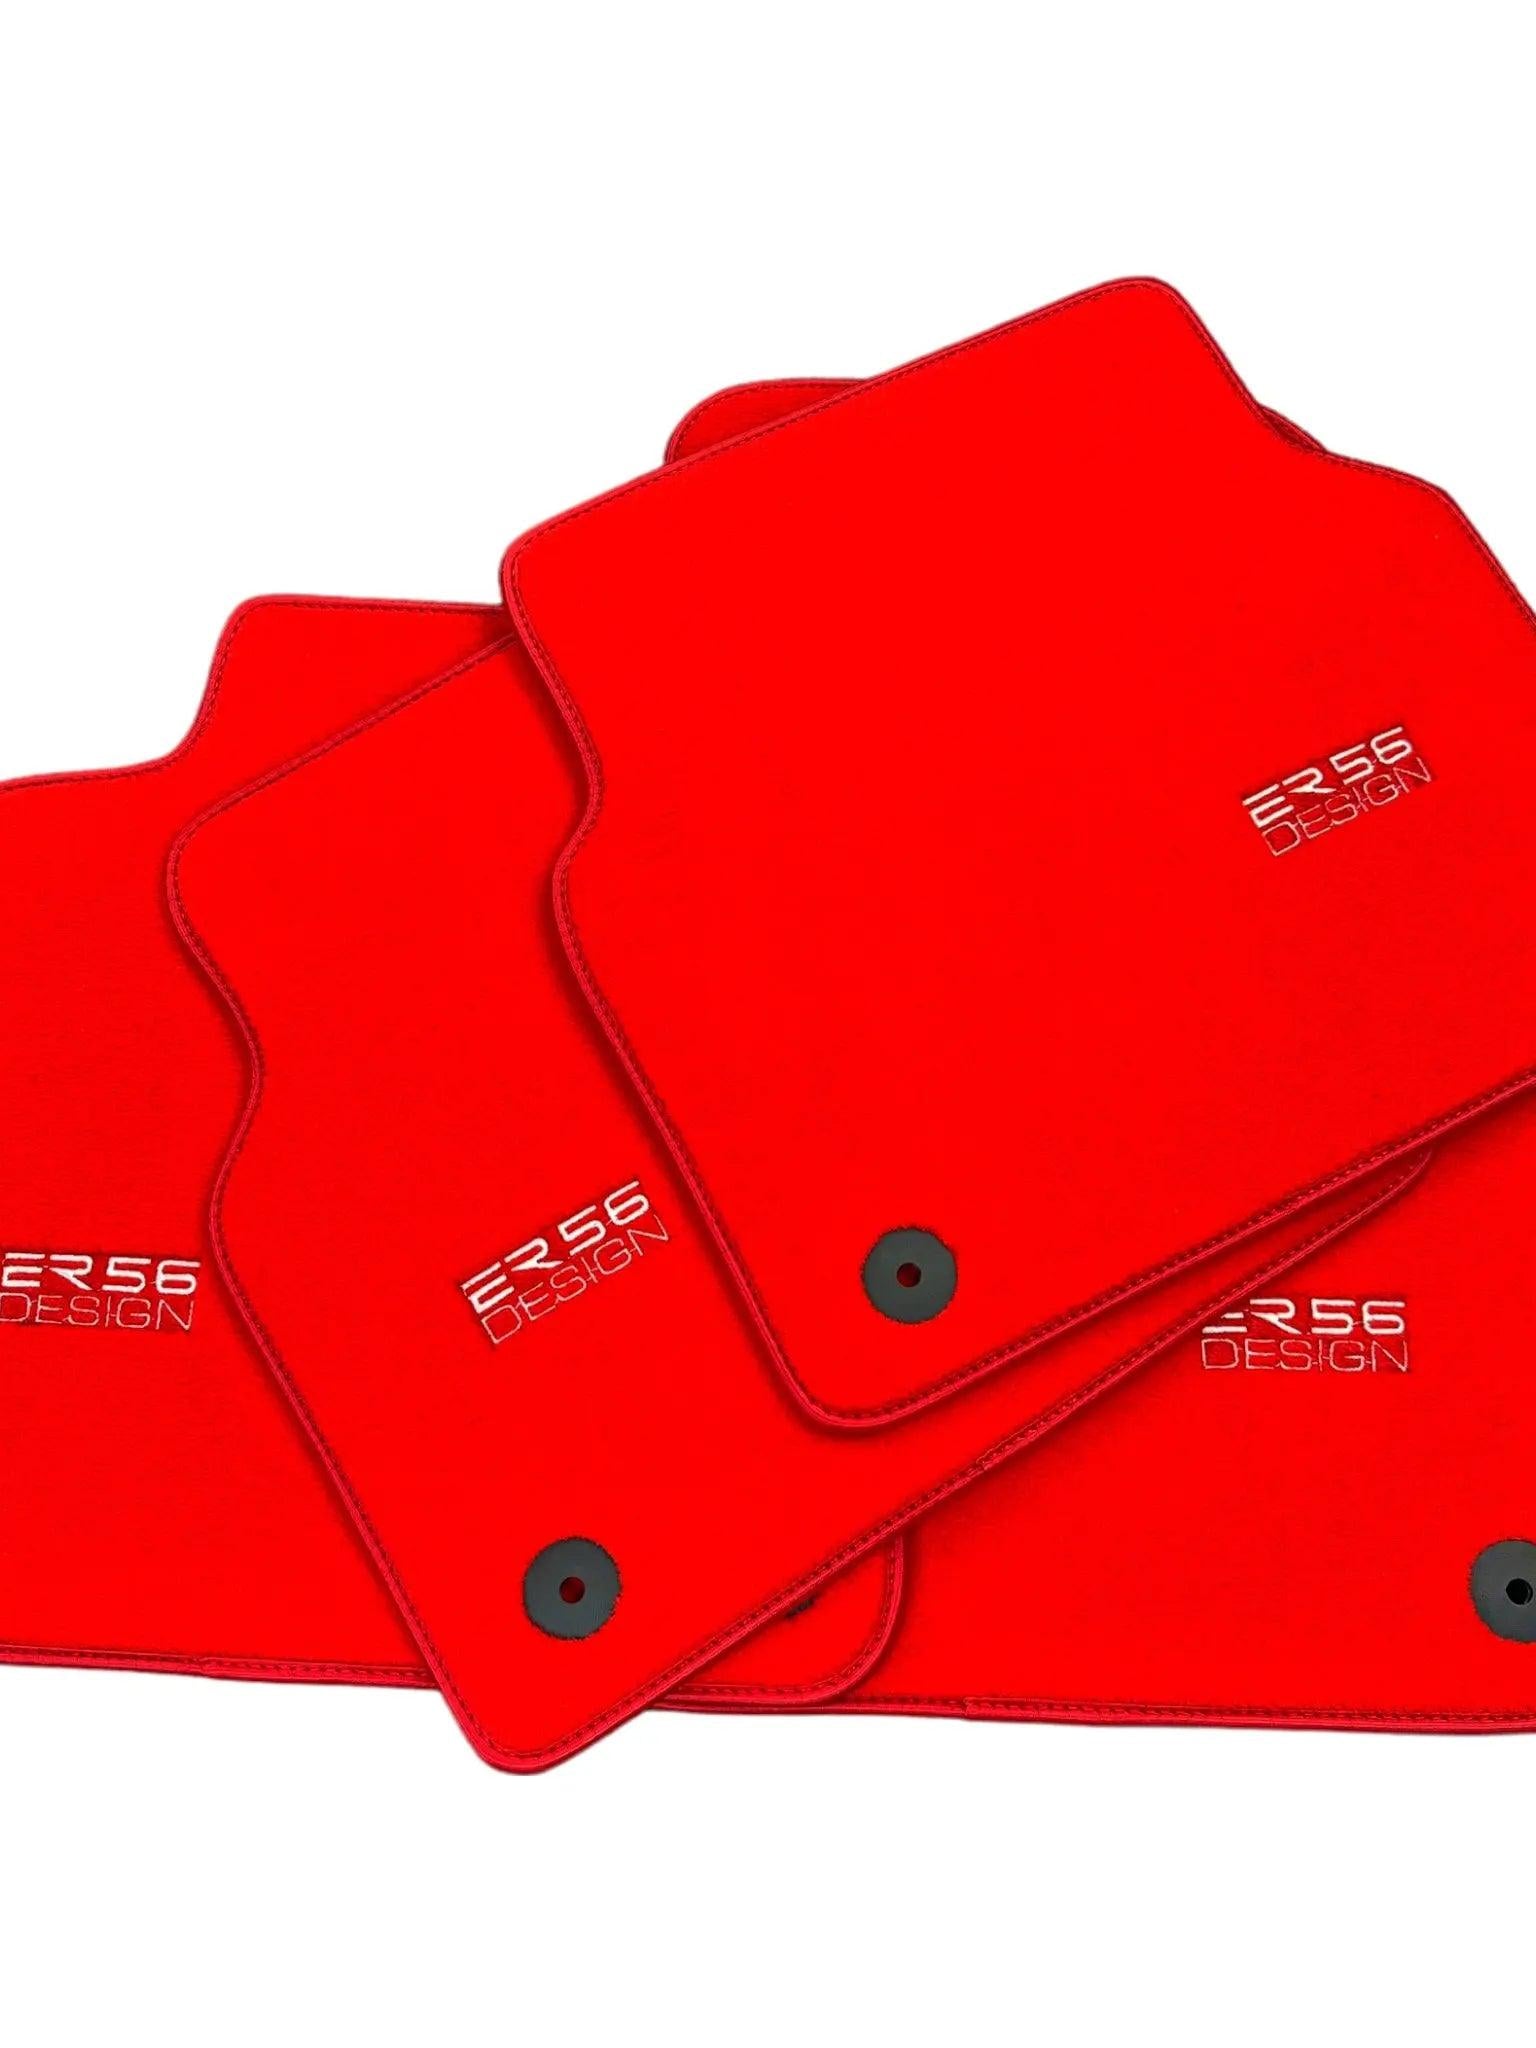 Red Floor Mats for Audi A3 - 5-door Hatchback (2000-2003) | ER56 Design